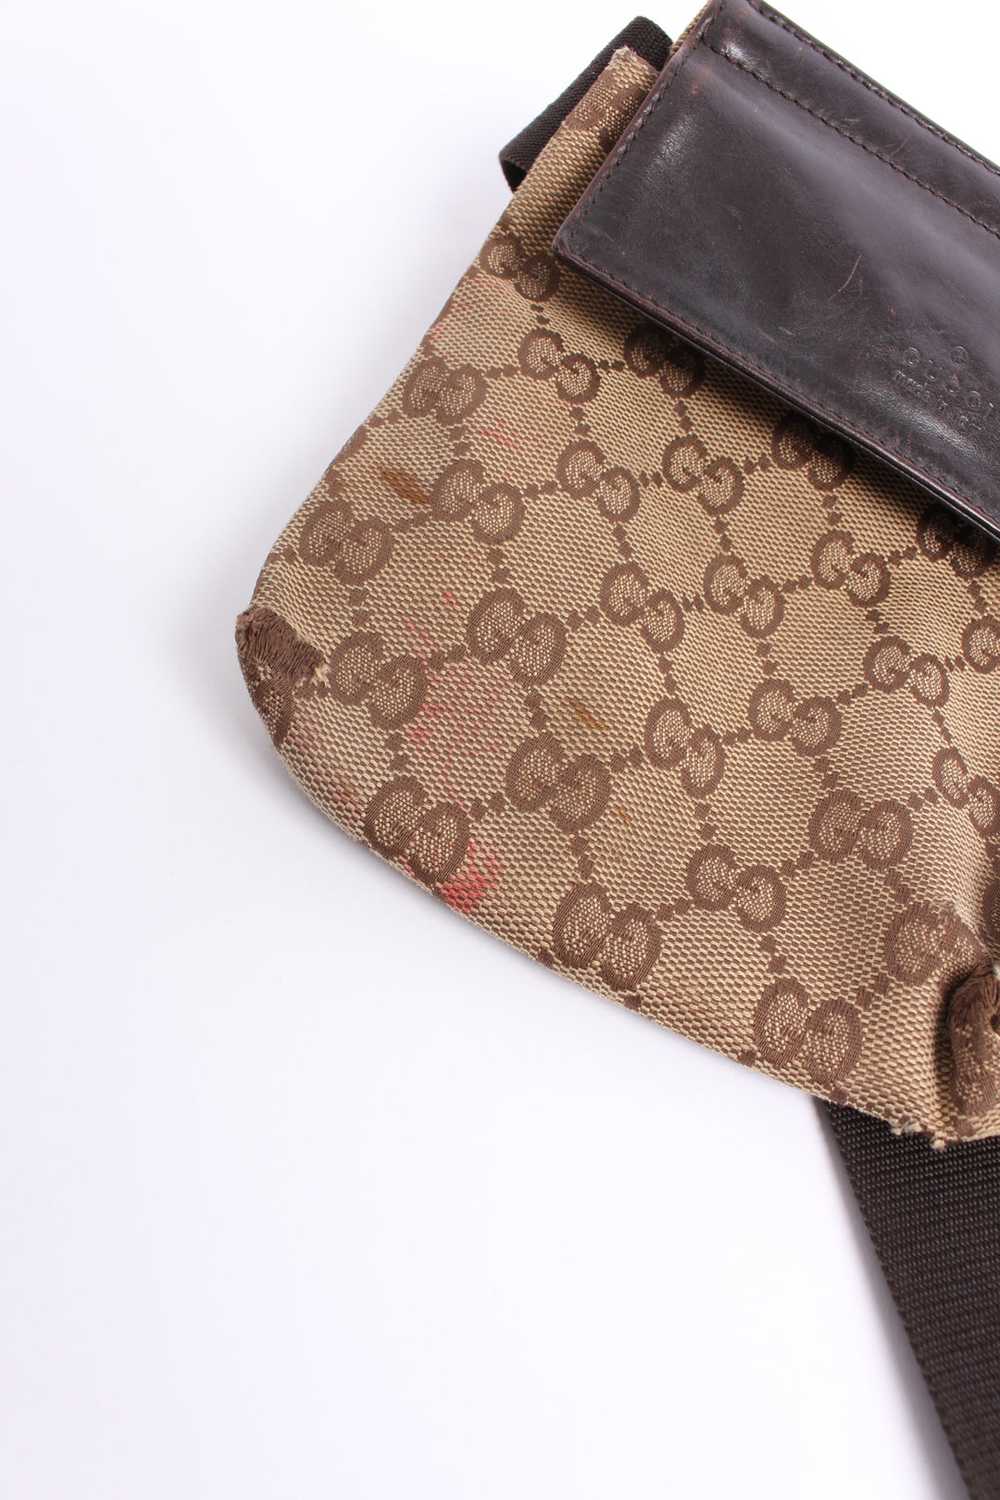 Vintage Gucci Monogram Sling Bag - image 8